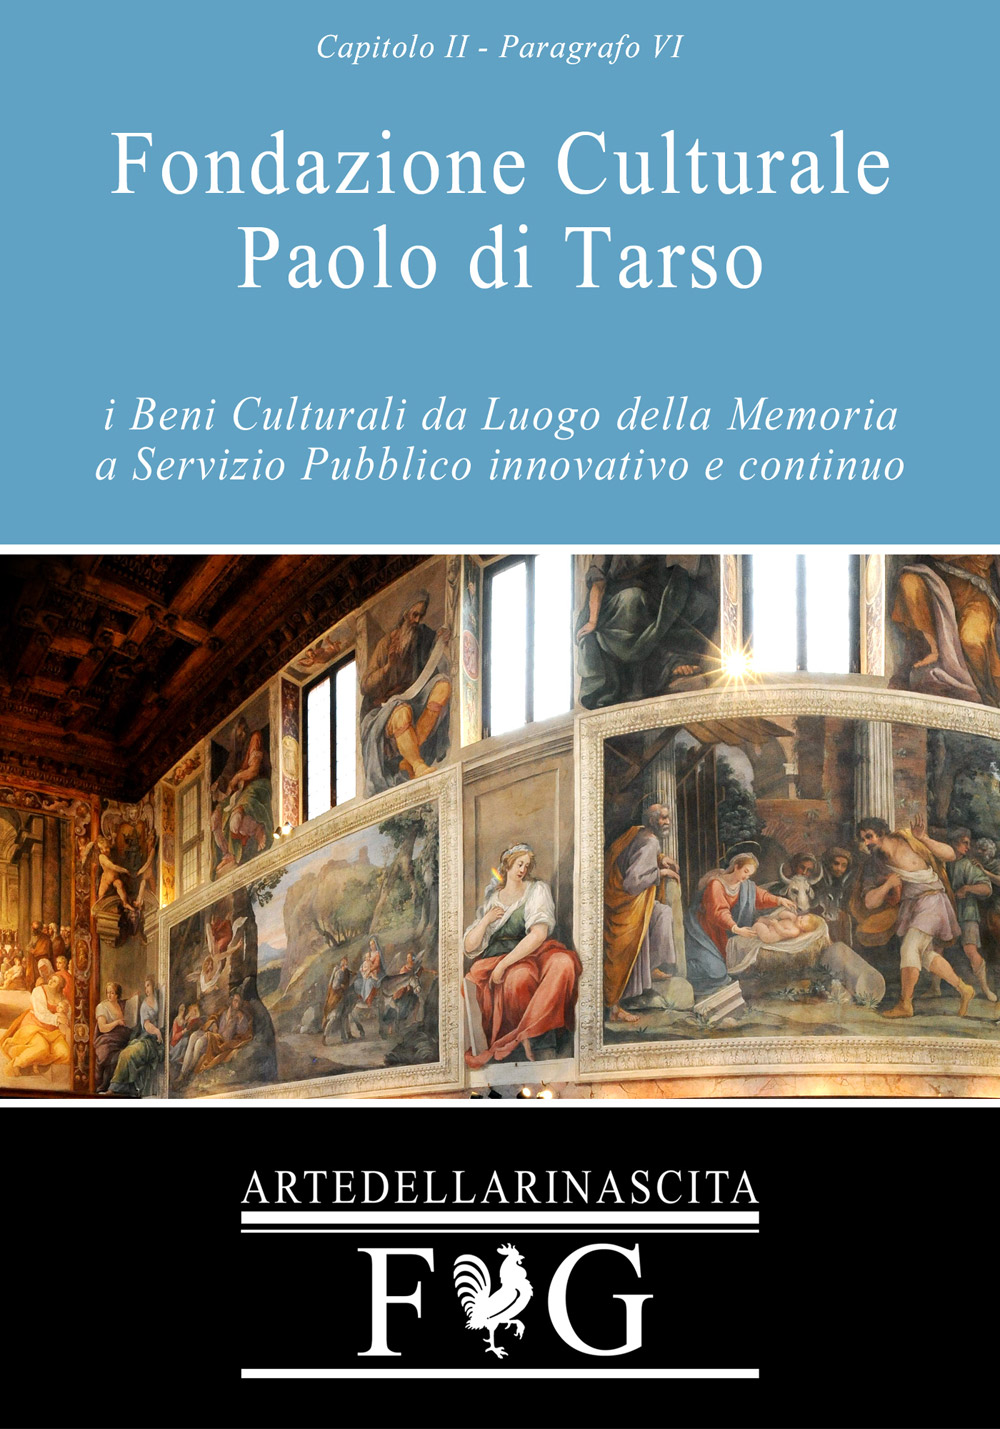 Fabio Gallo-Fondazione Culturale Paolo di Tarso-Beni Culturali-Digitalizzazione-Eleonora Cafiero